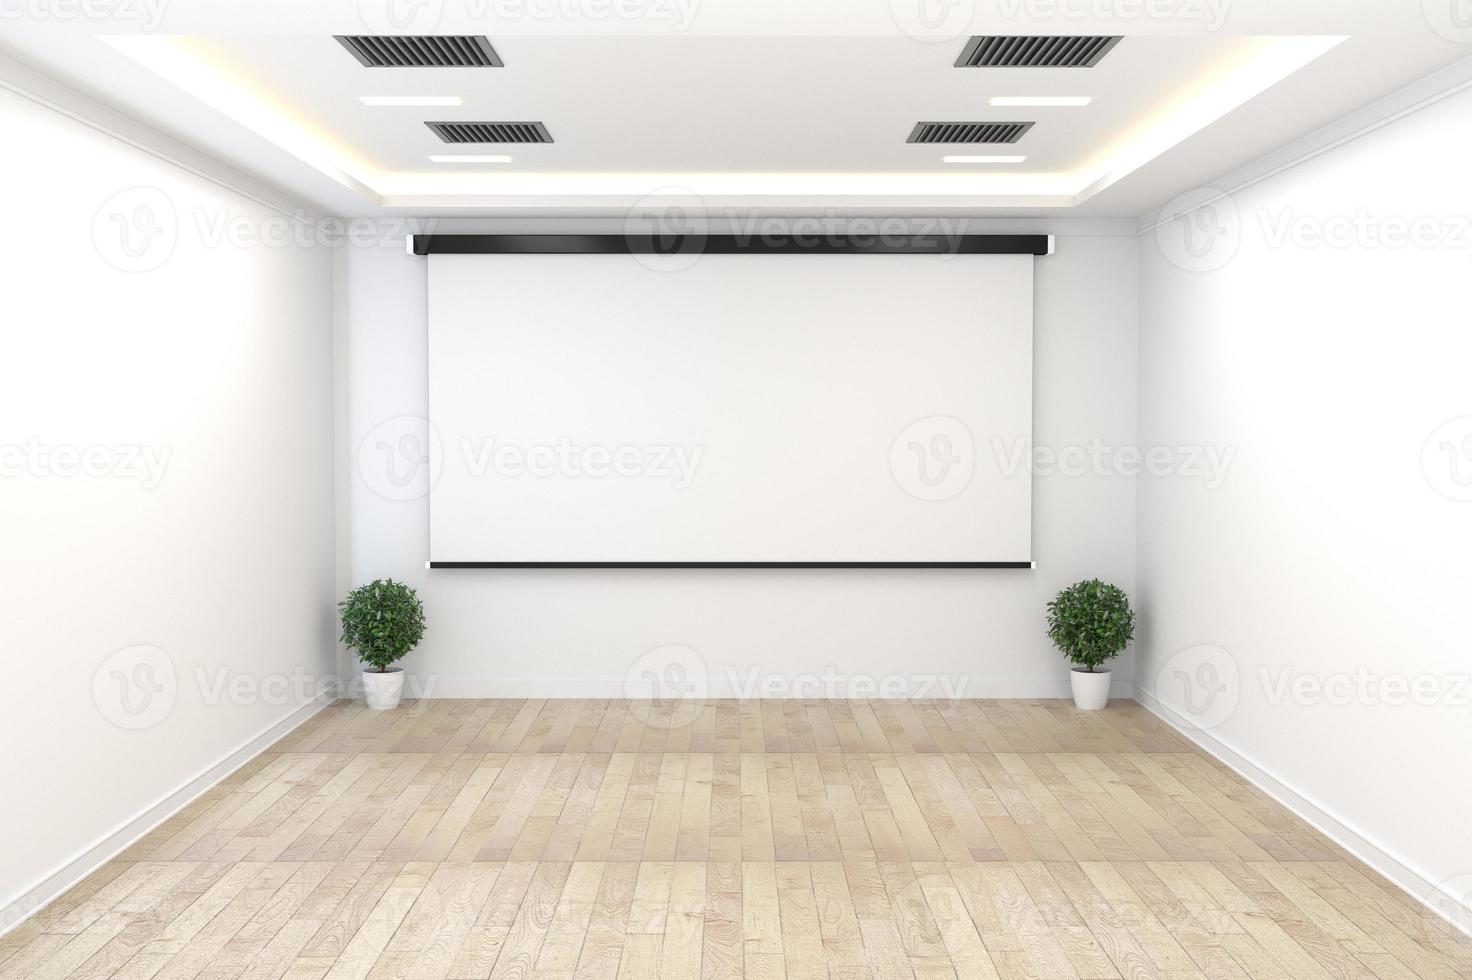 salle du conseil - concept vide, intérieur d'entreprise avec plantes et parquet sur mur blanc vide. rendu 3D photo